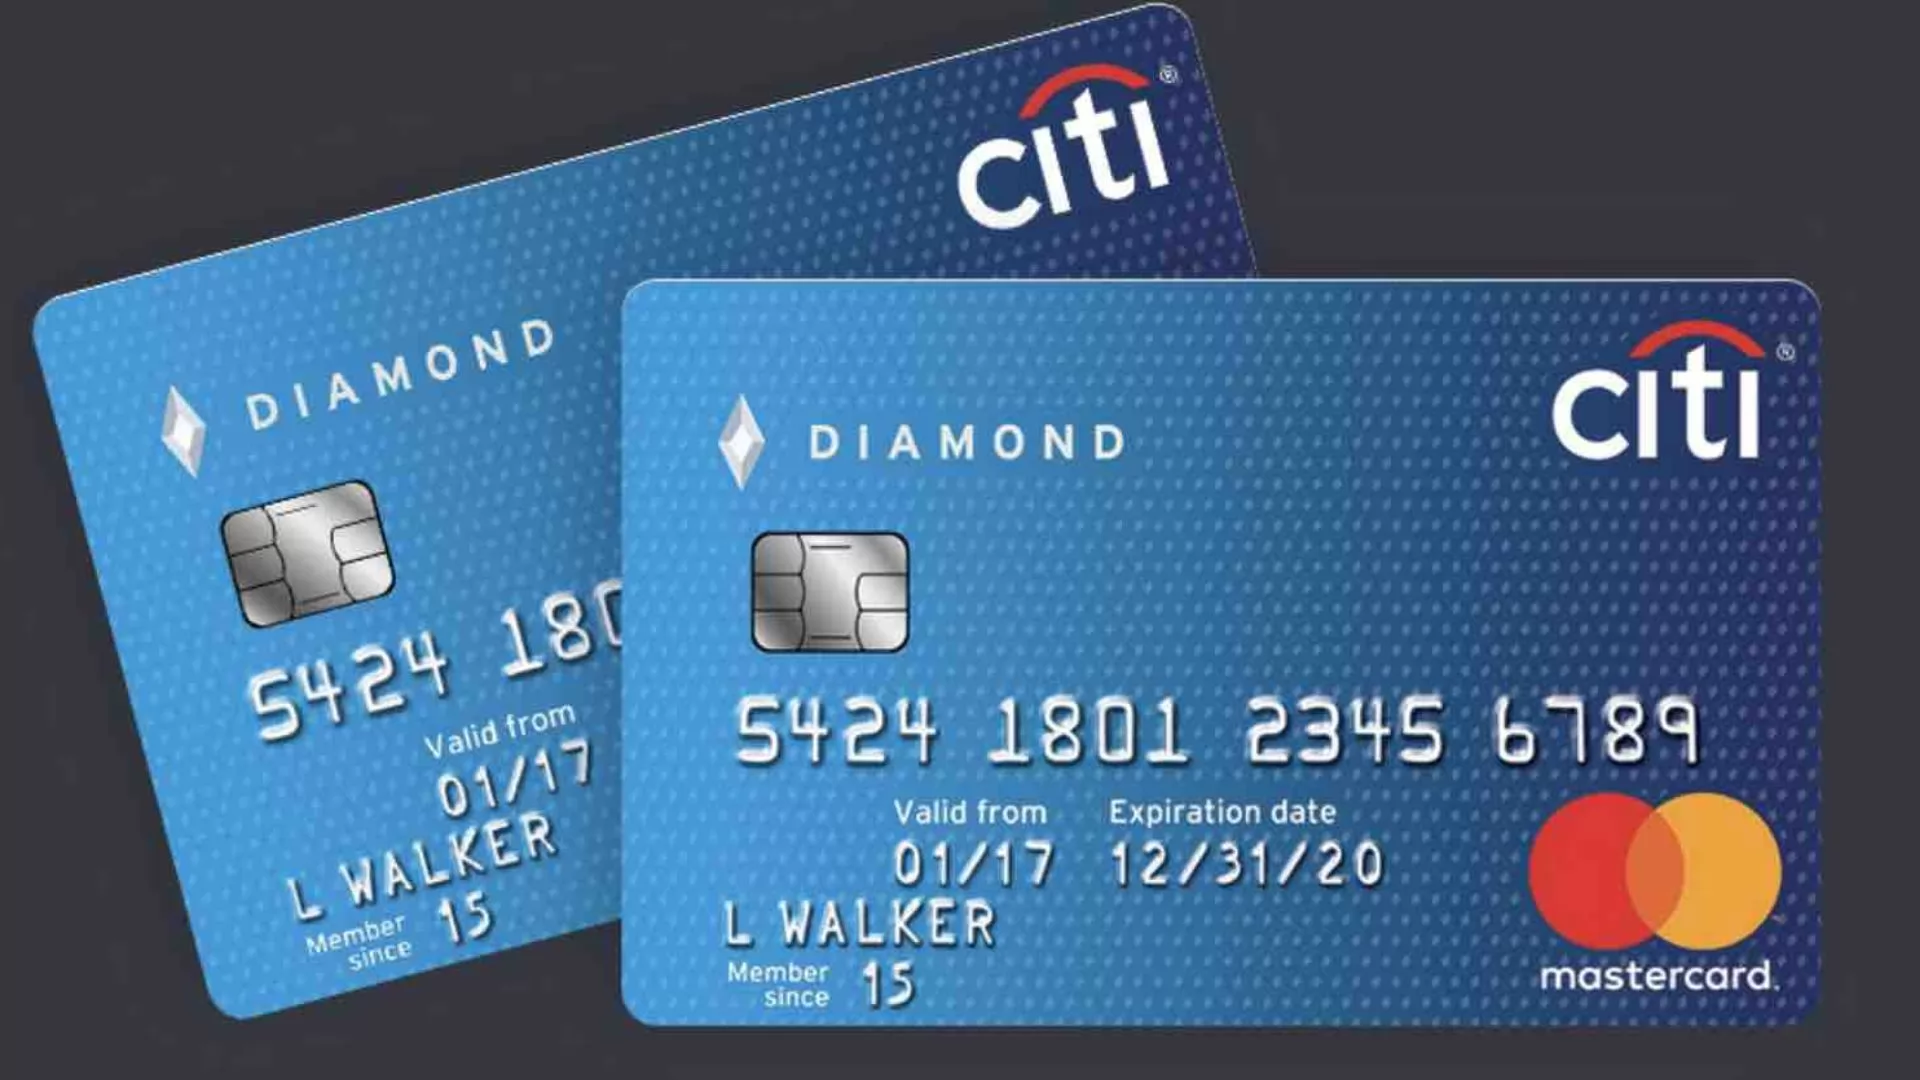 Citi Bank Cashback Credit Card